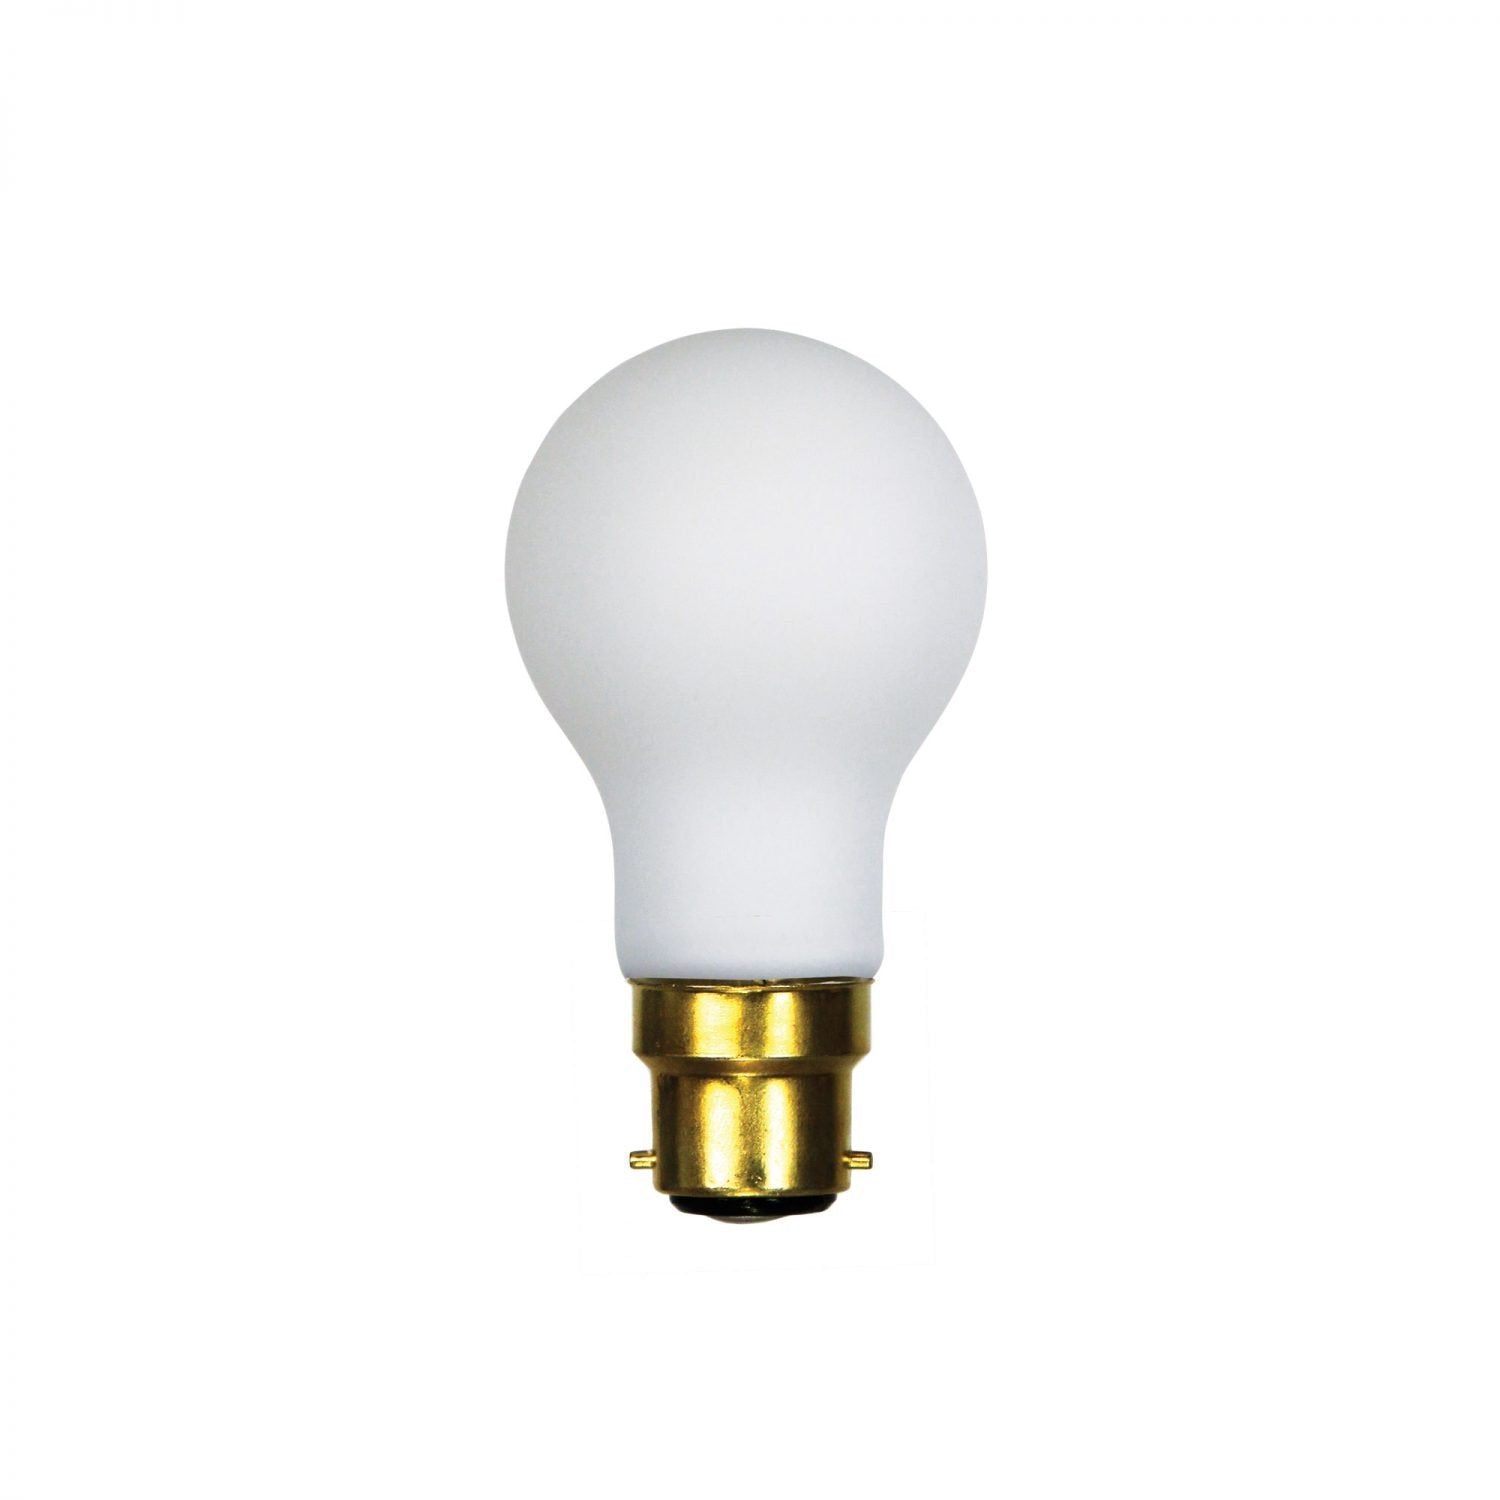 Filament LED A60 Opal 2700K B22 Globe - A-LED-21706127